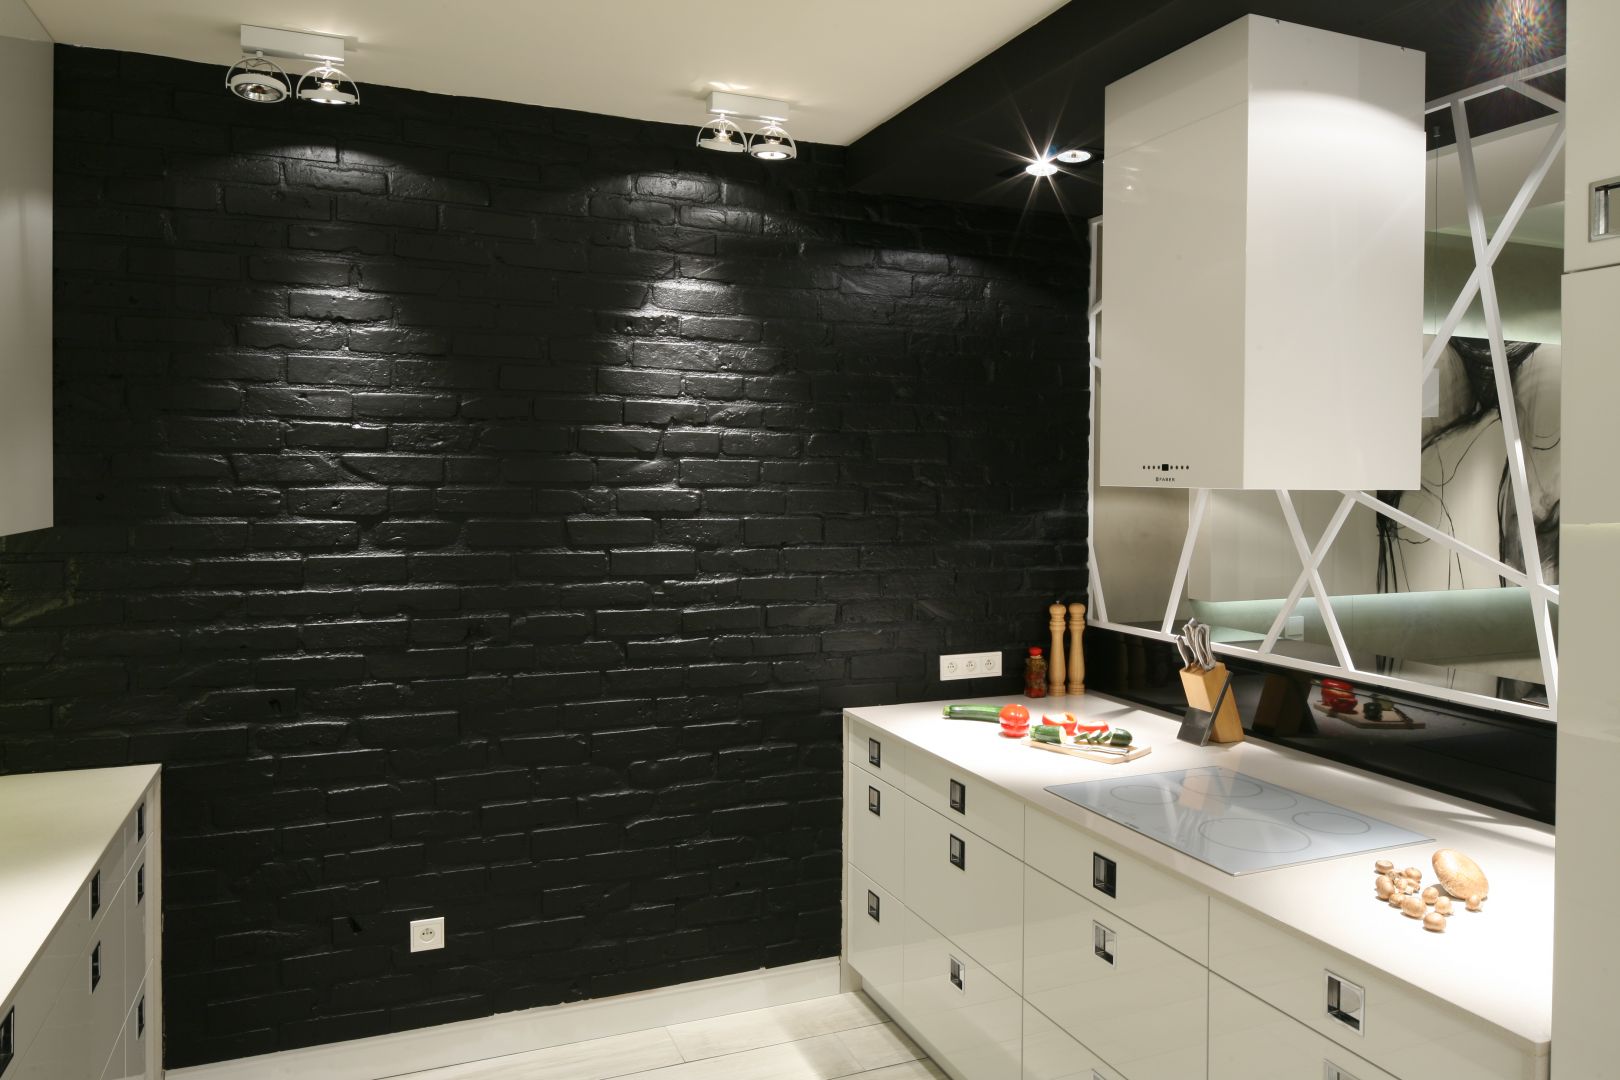 Czarna ściana w kuchni stanowi jej prawdziwą ozdobę. To cegła pomalowana i efektownie podświetlona. Projekt Dominik Respondek. Fot. Bartosz Jarosz.